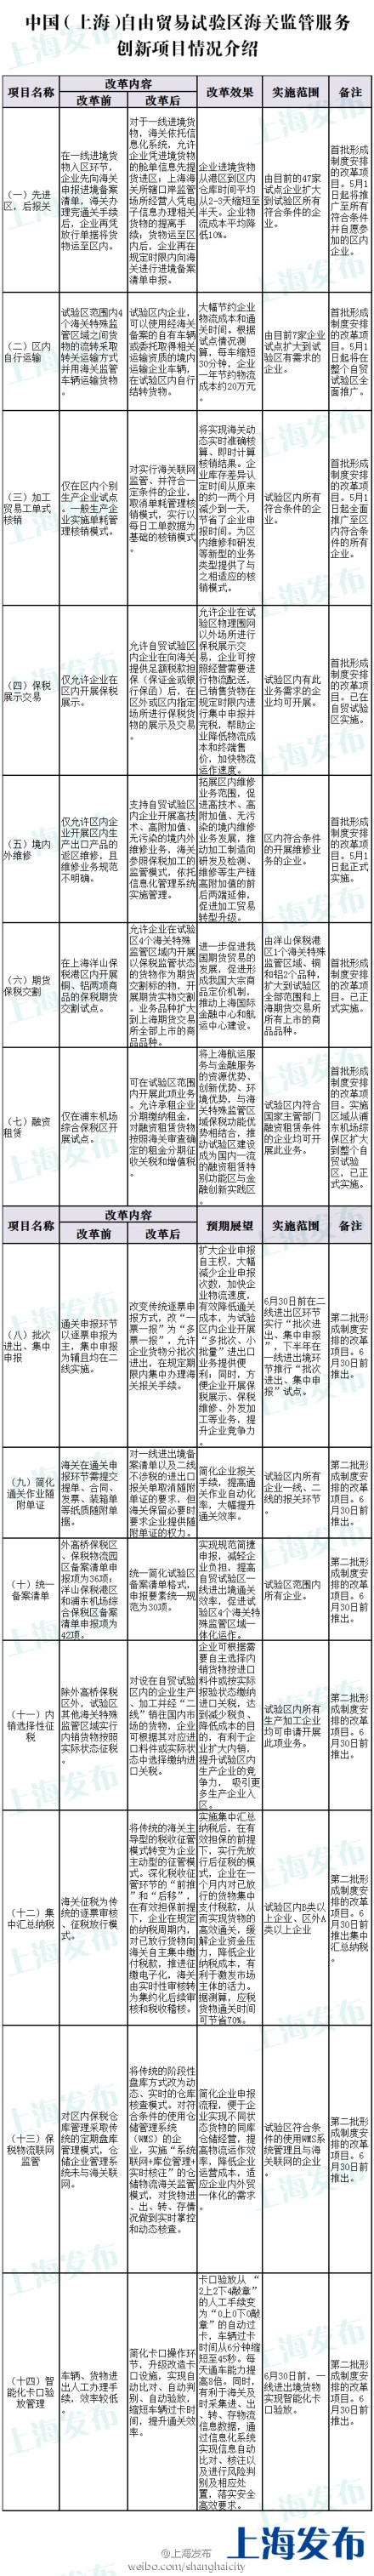 上海海关创新14项自贸区监管服务